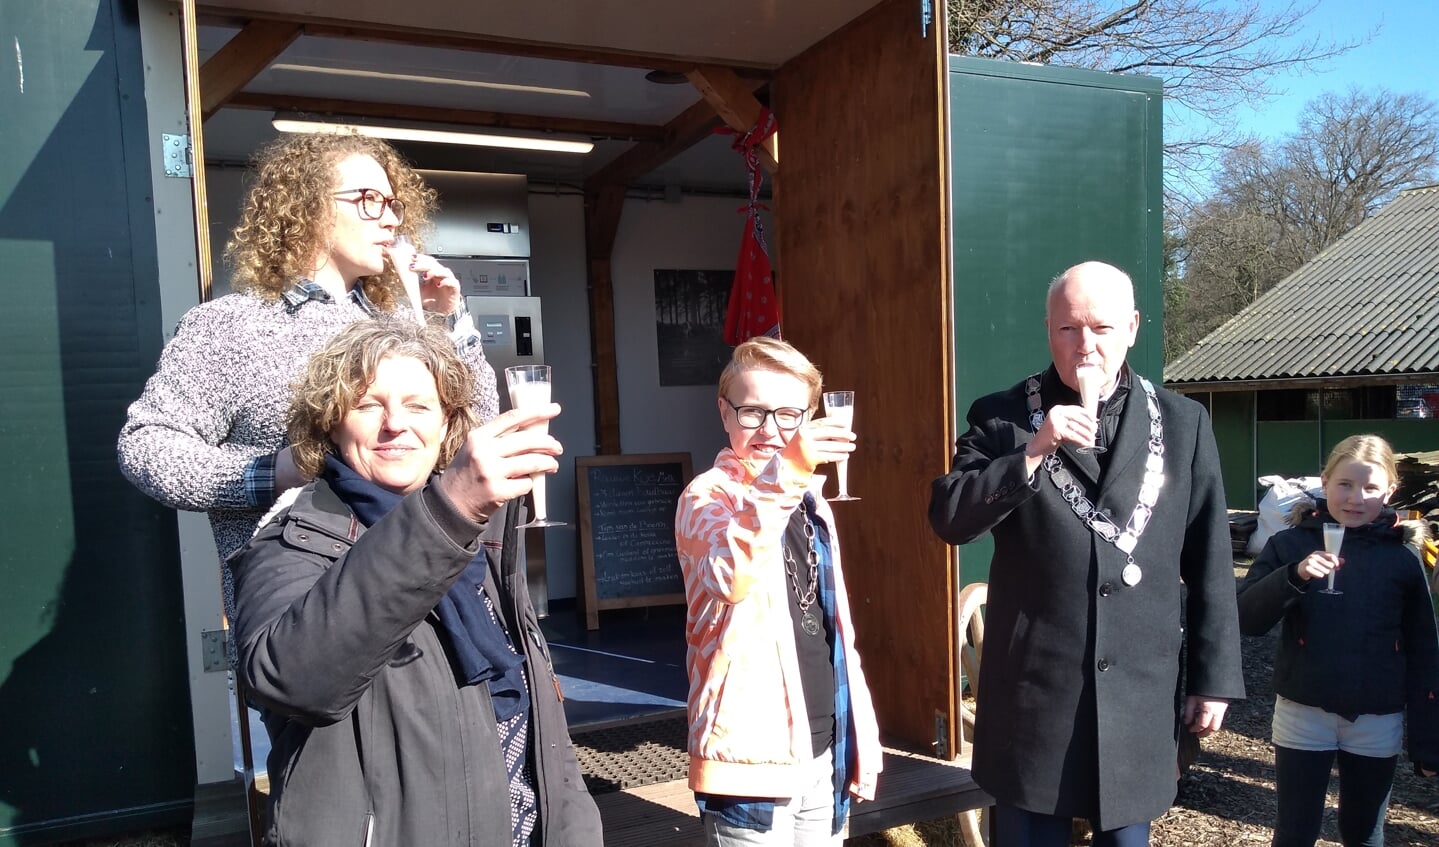 Miranda van Rijn, Duco Das en Ruud van Bennekom proosten met melk op de opening van de nieuwe melktap.